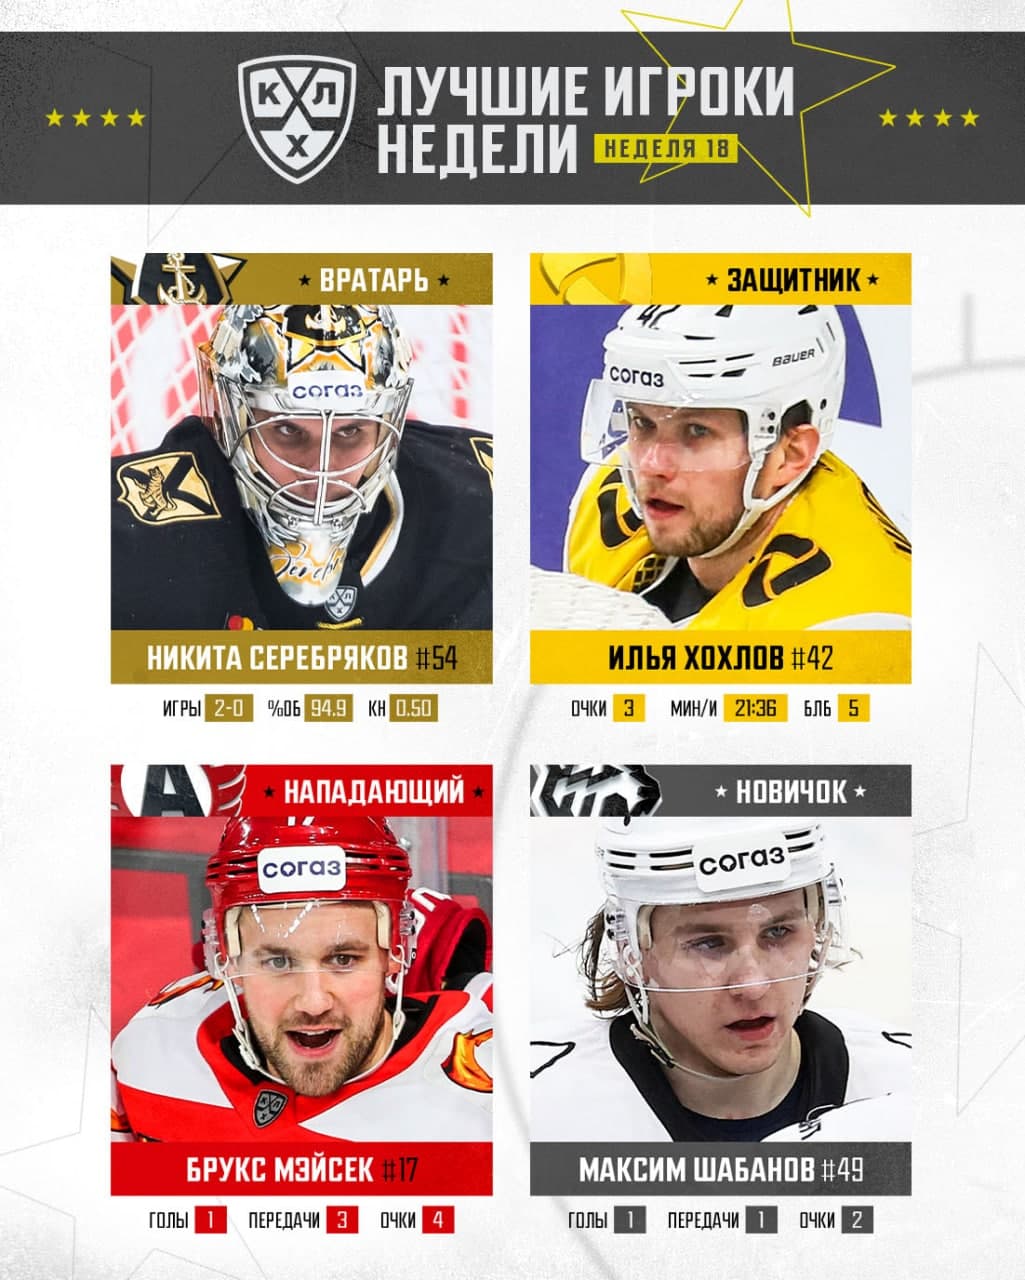 Максим Шабанов – лучший новичок 18-й недели КХЛ 